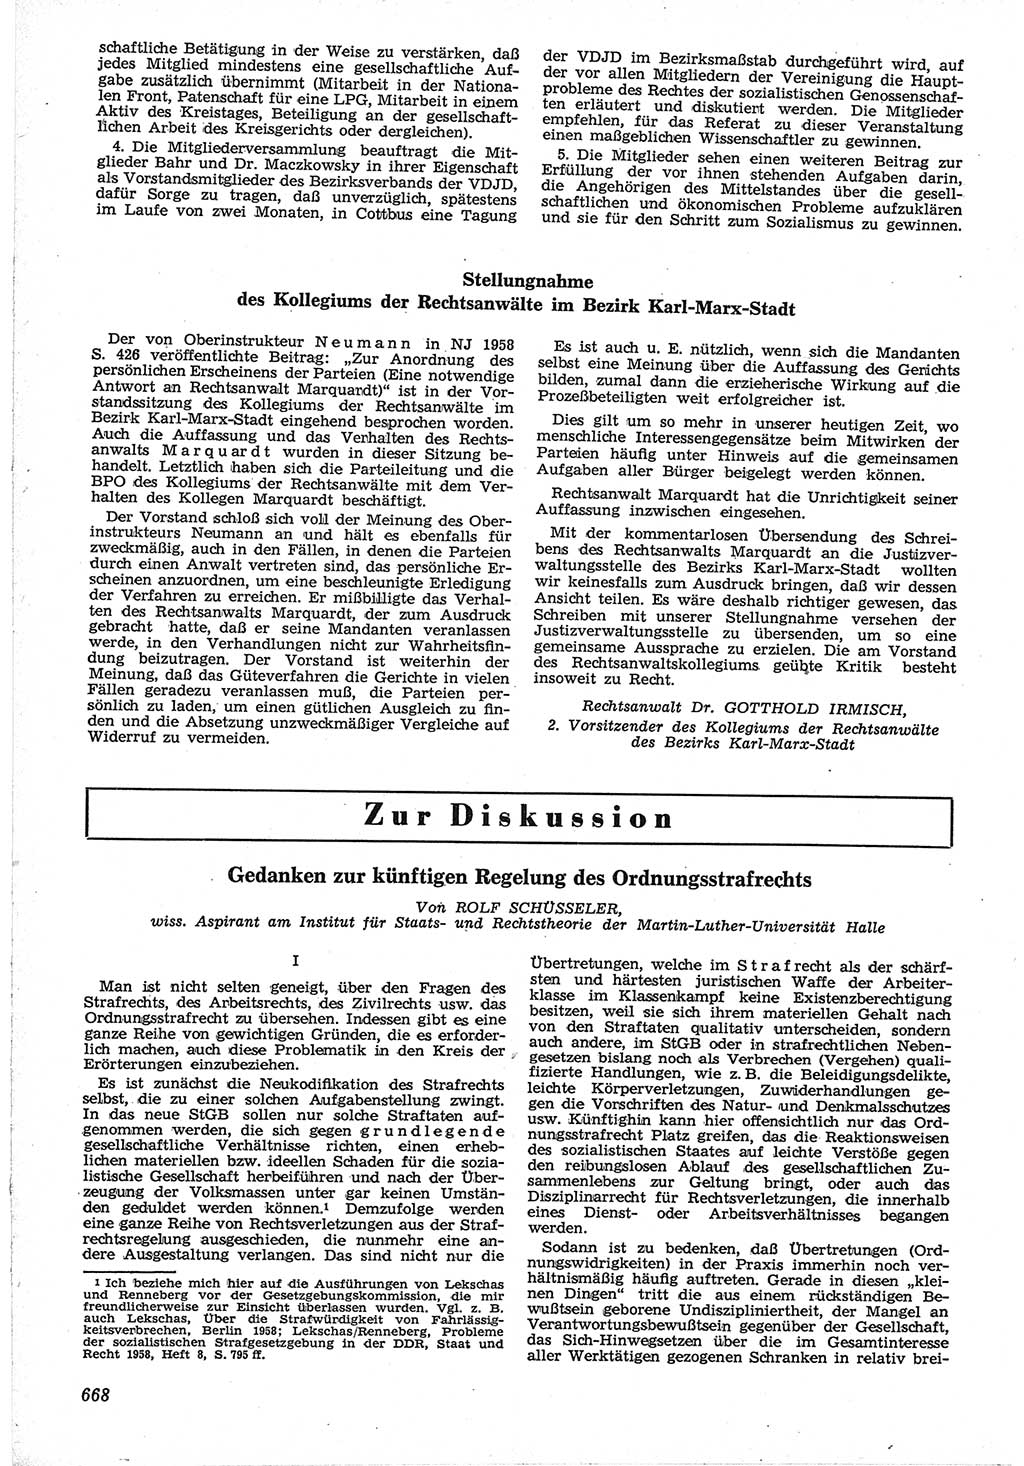 Neue Justiz (NJ), Zeitschrift für Recht und Rechtswissenschaft [Deutsche Demokratische Republik (DDR)], 12. Jahrgang 1958, Seite 668 (NJ DDR 1958, S. 668)